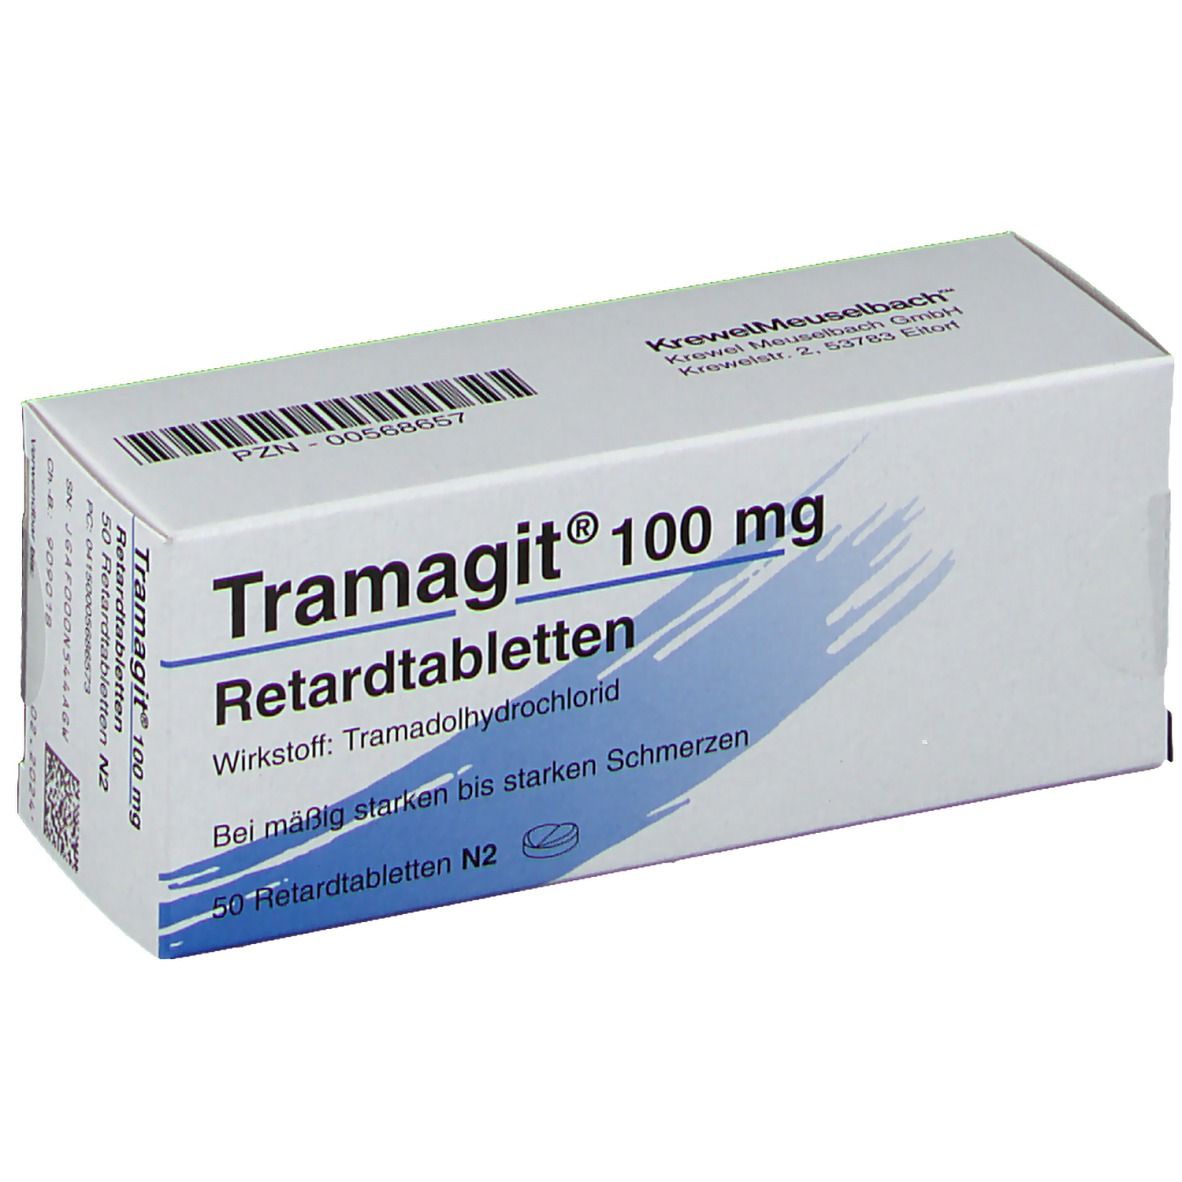 Tramagit® 100 mg